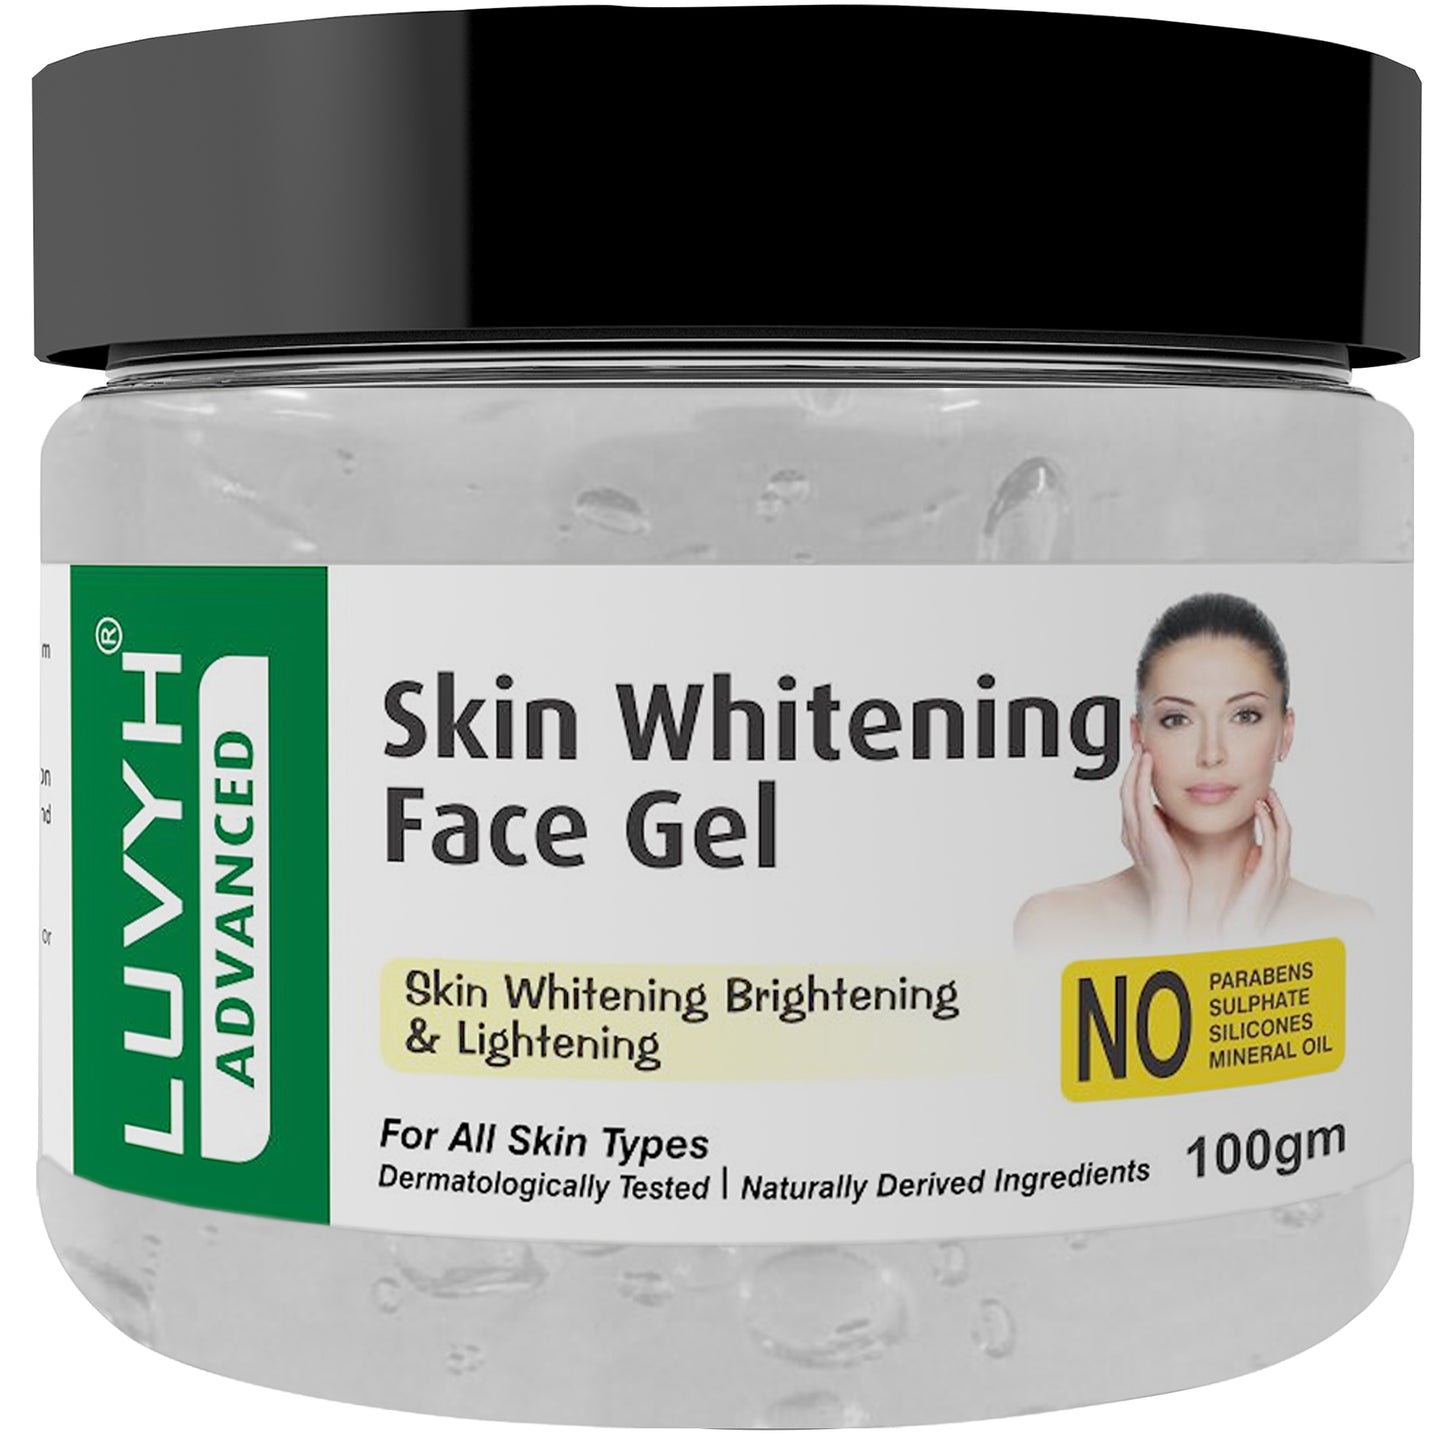 Luvyh Skin Whitening Face Gel - 100g